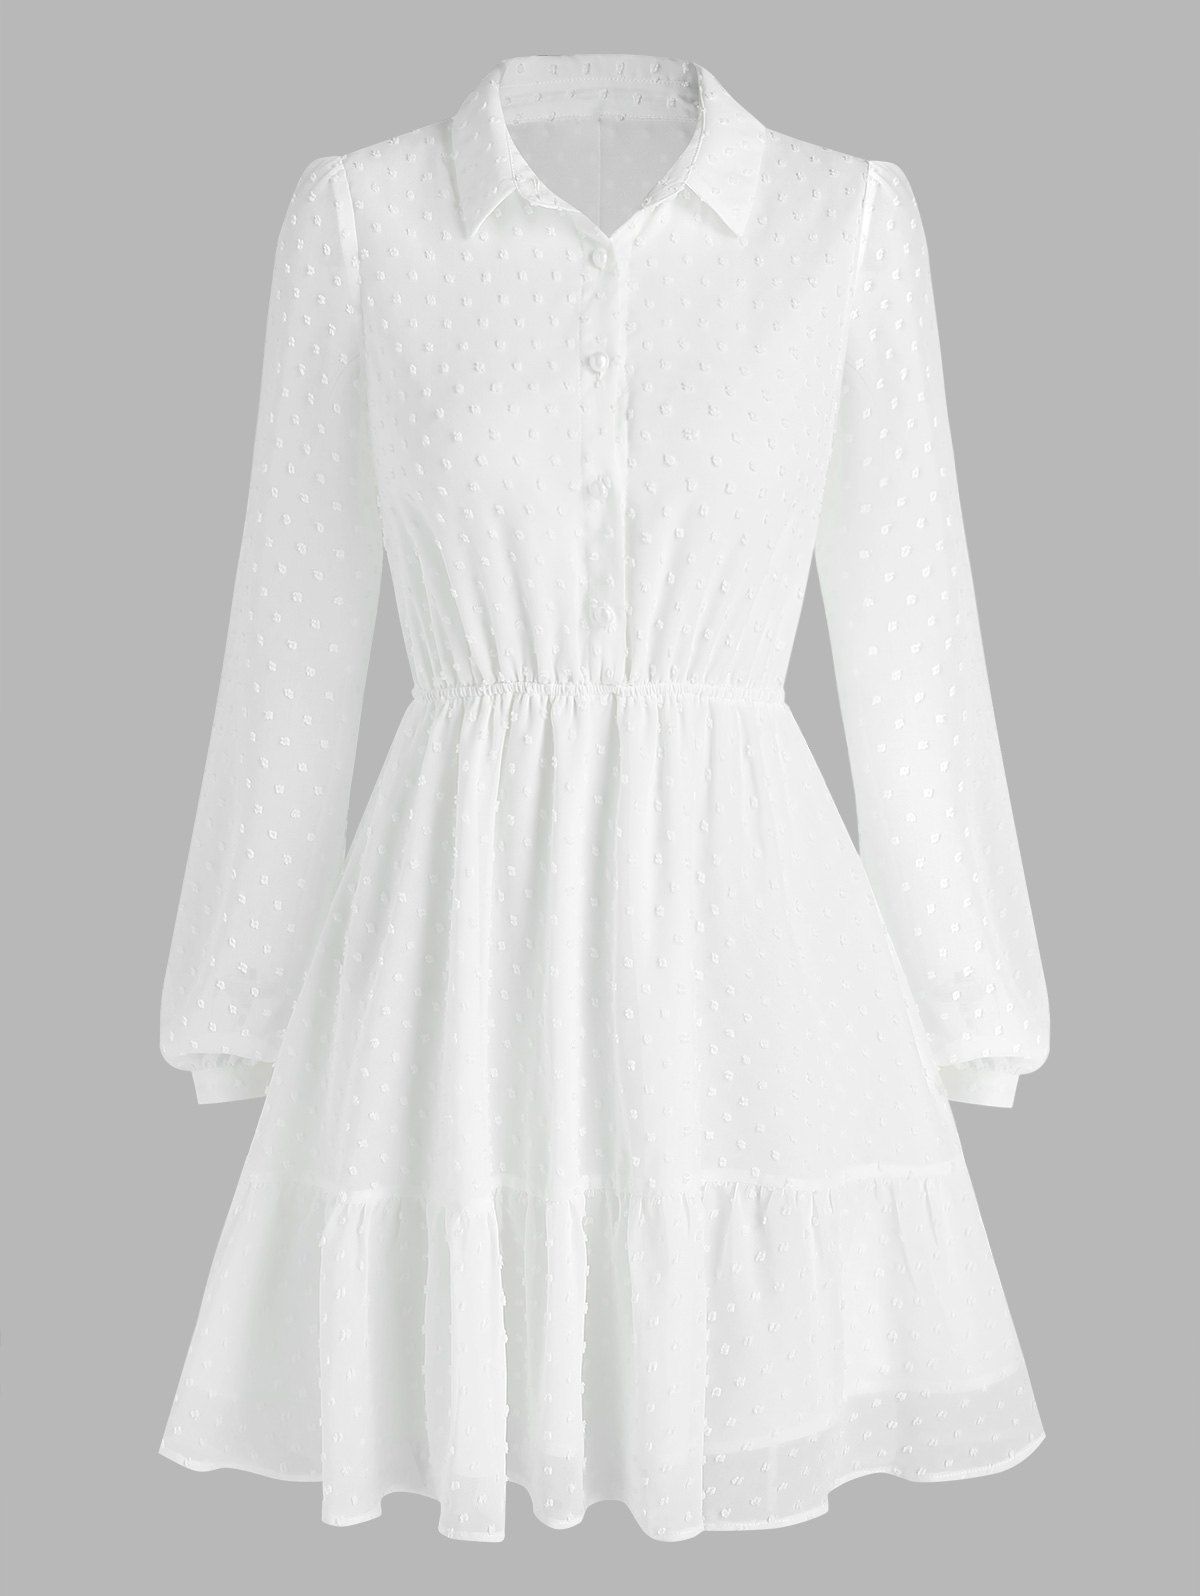 Long Sleeve Swiss Dot Chiffon Dress - WHITE XXL